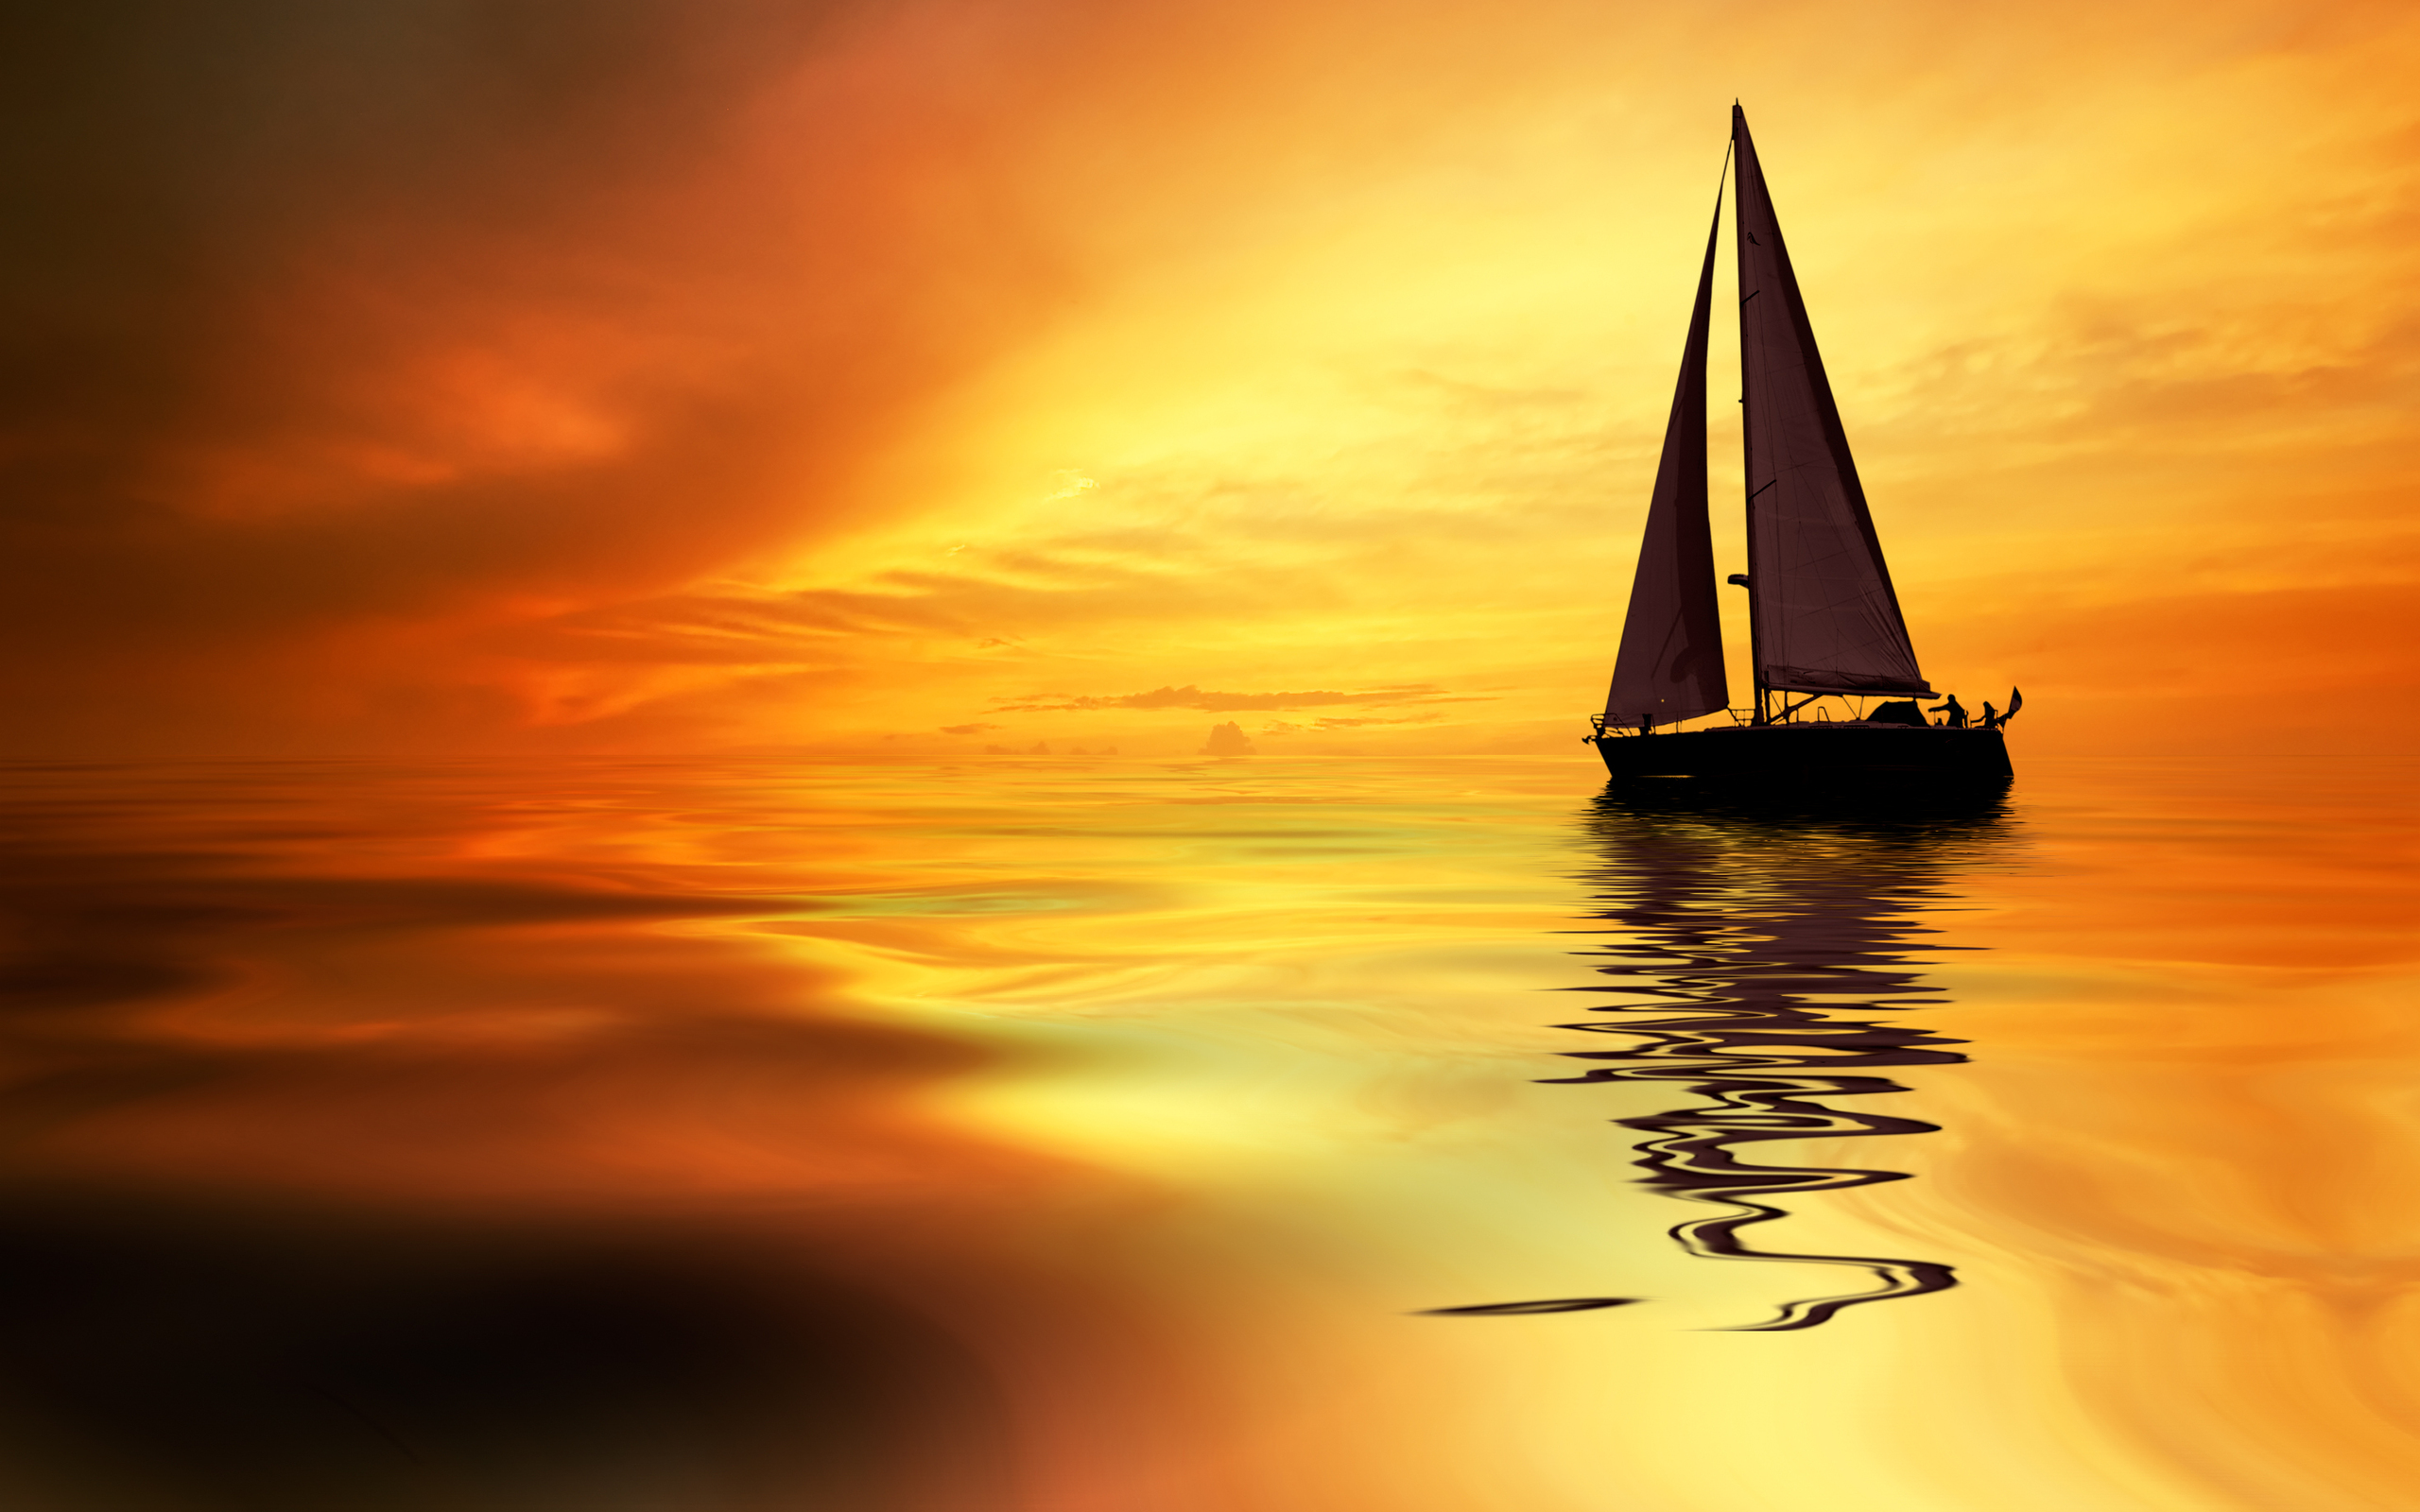 boat, yacht, vehicles, sailboat, sun, sunset